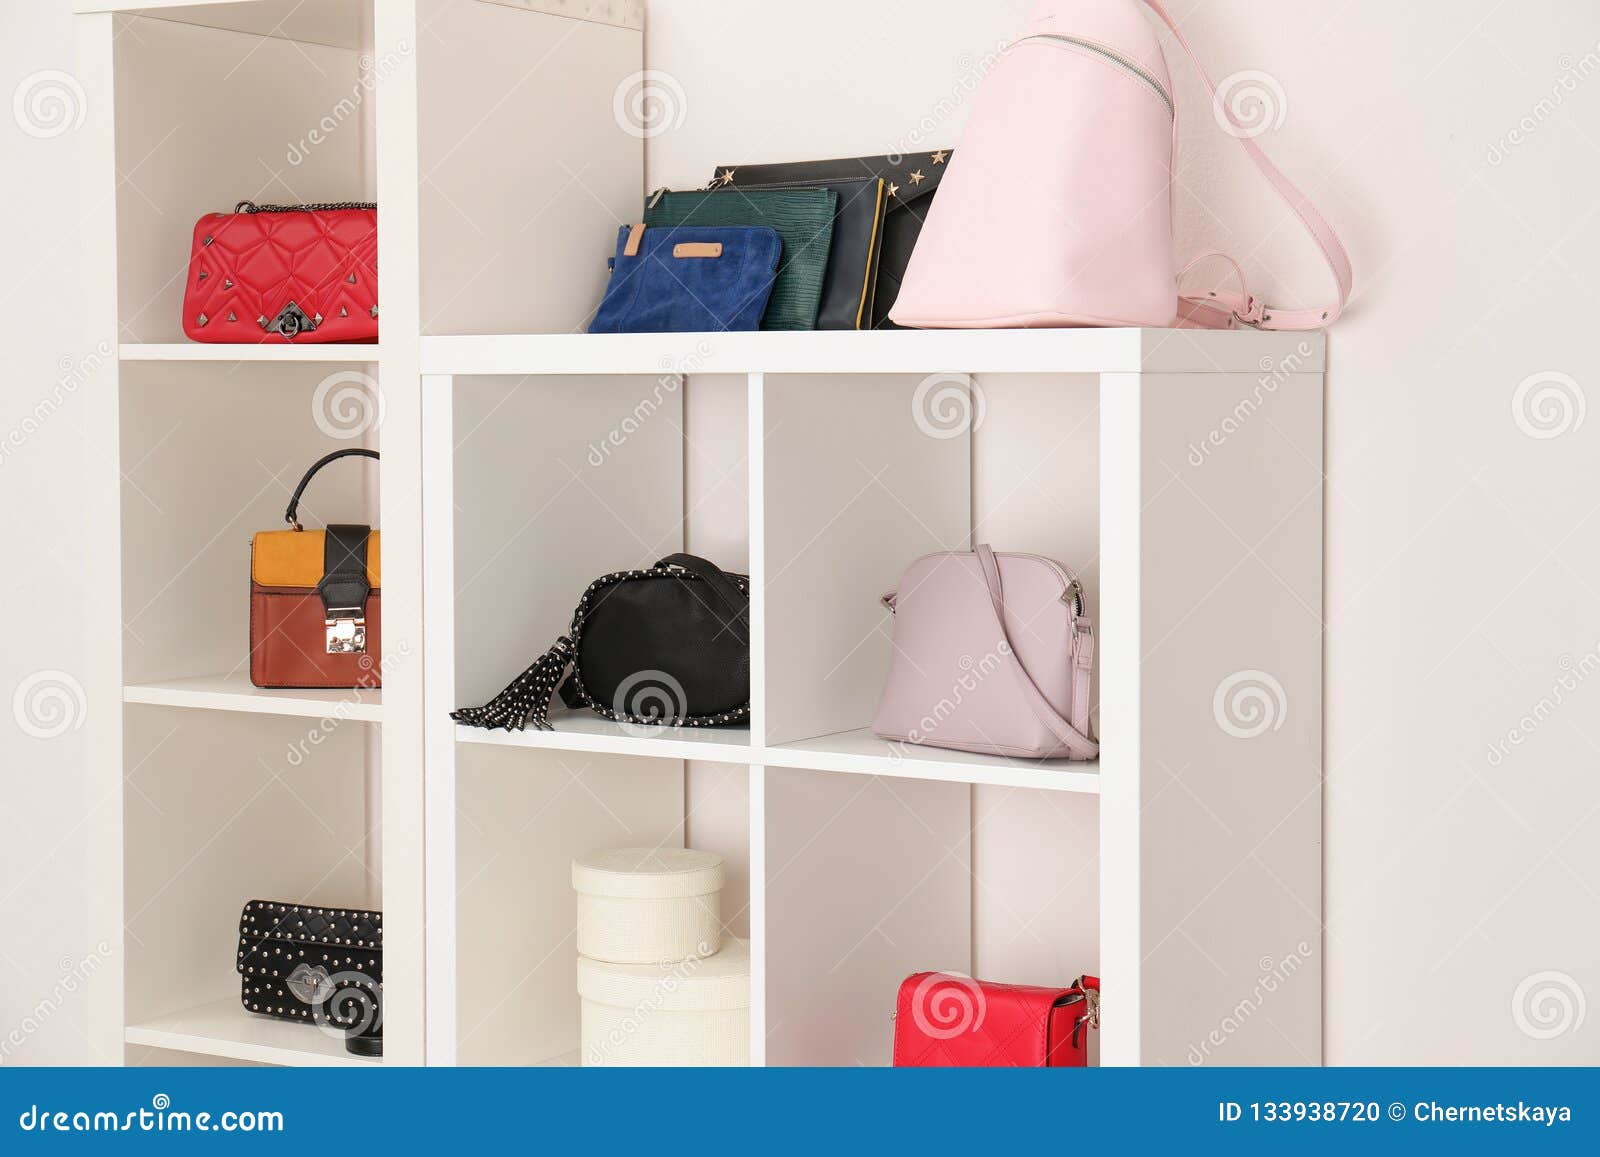 33 Storage Ideas to Organize Your Closet and Decorate with Handbags and  Purses | Handbag storage, Room closet, Closet inspiration